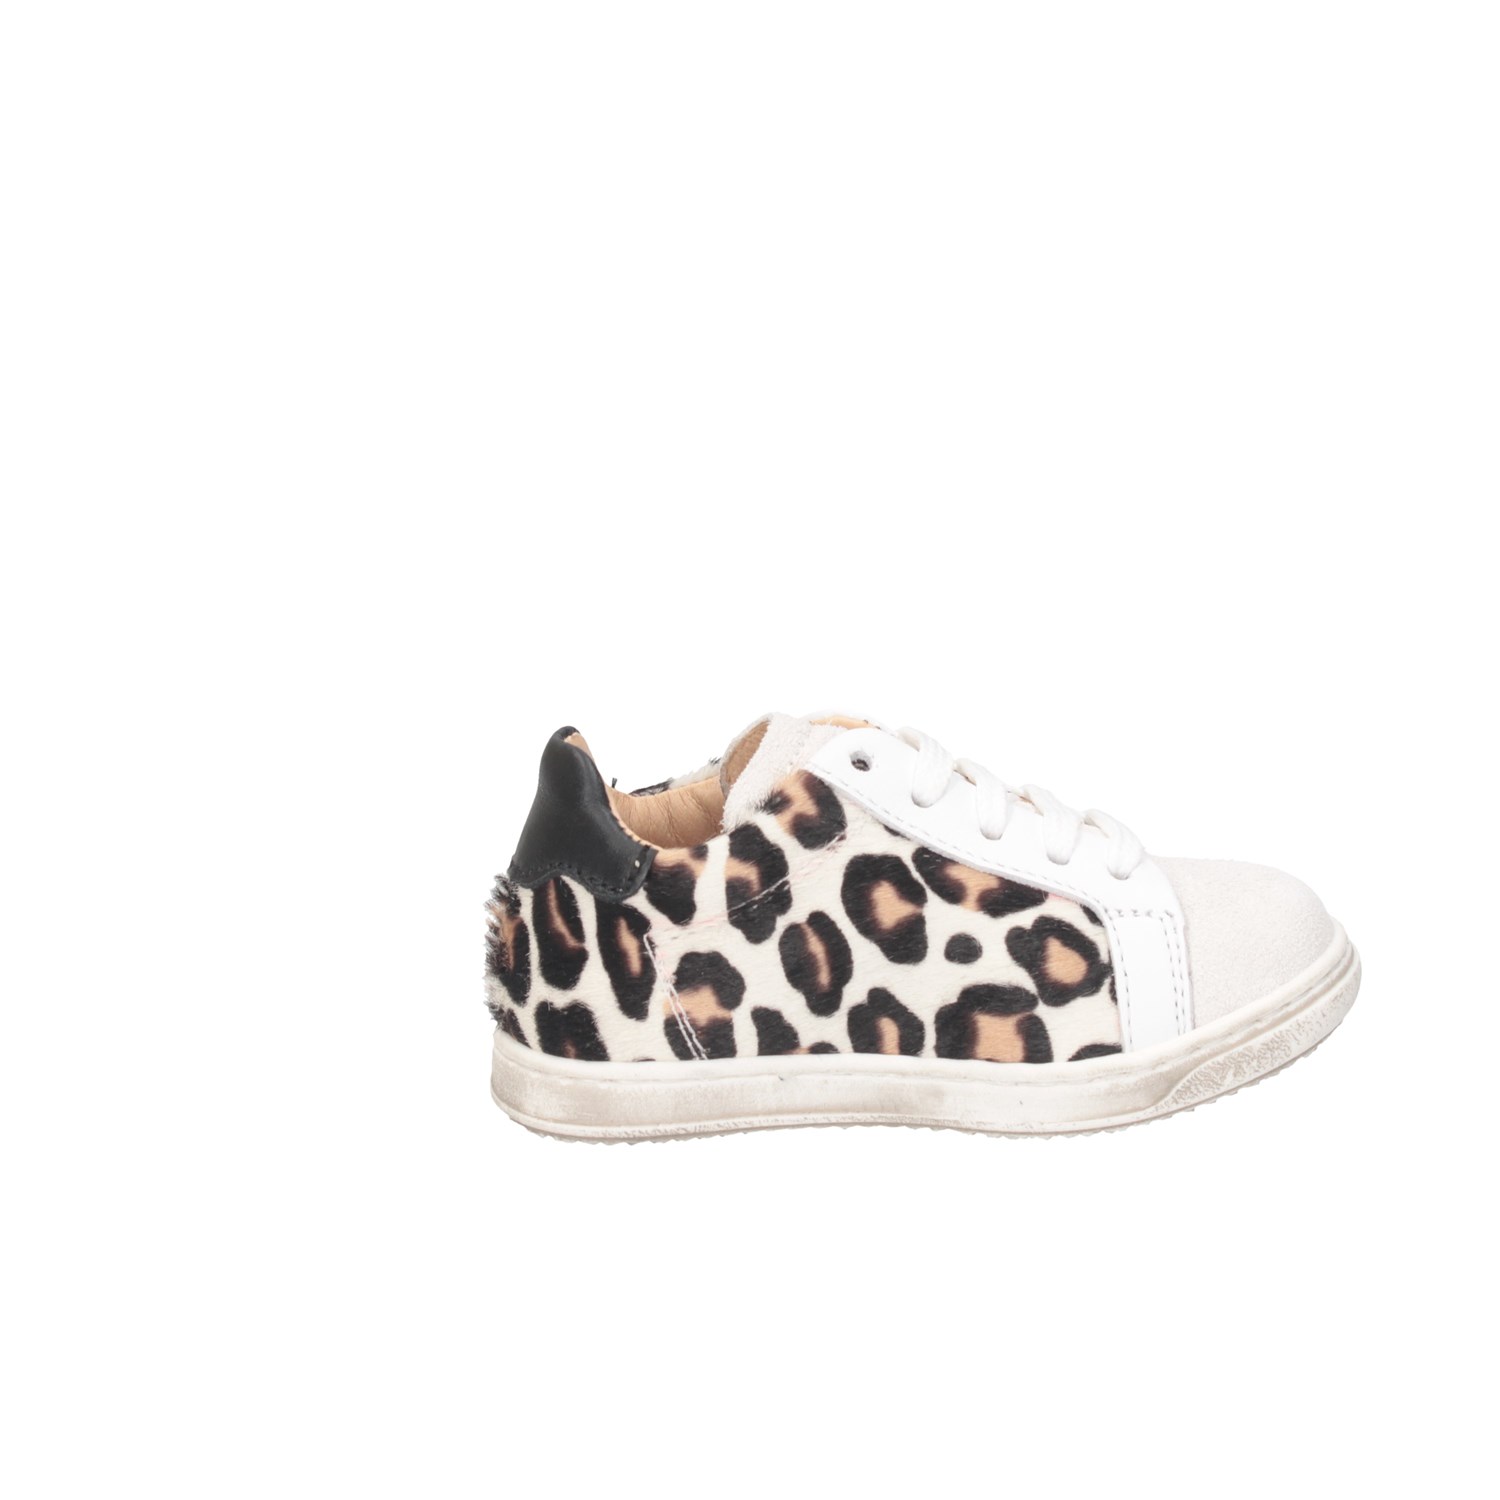 Gioiecologiche 5102 White / Leopard Shoes Child 